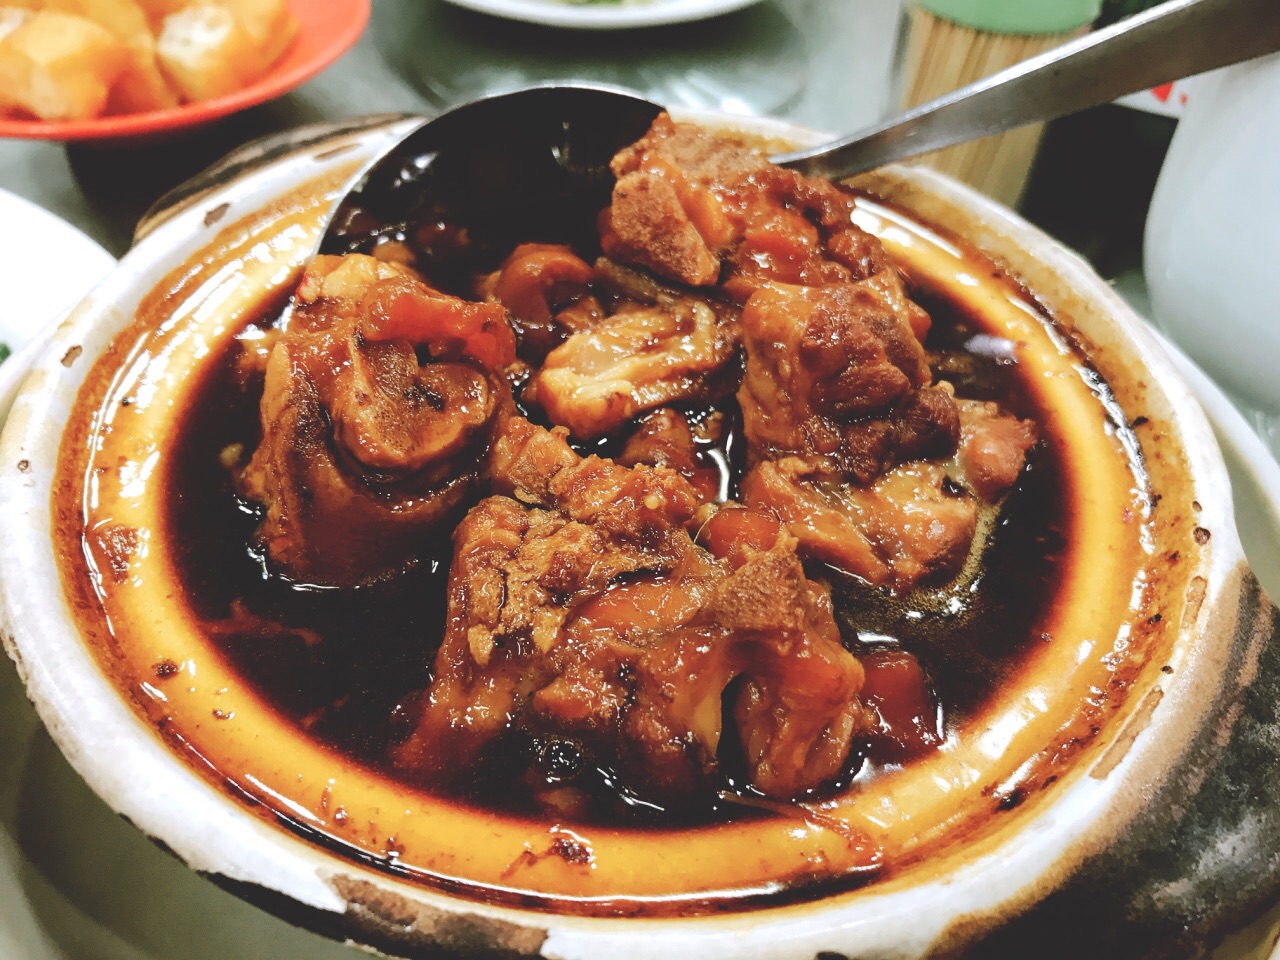 【携程美食林】吉隆坡新峰肉骨茶餐馆,到吉隆坡吃肉骨茶,必须到新峰肉